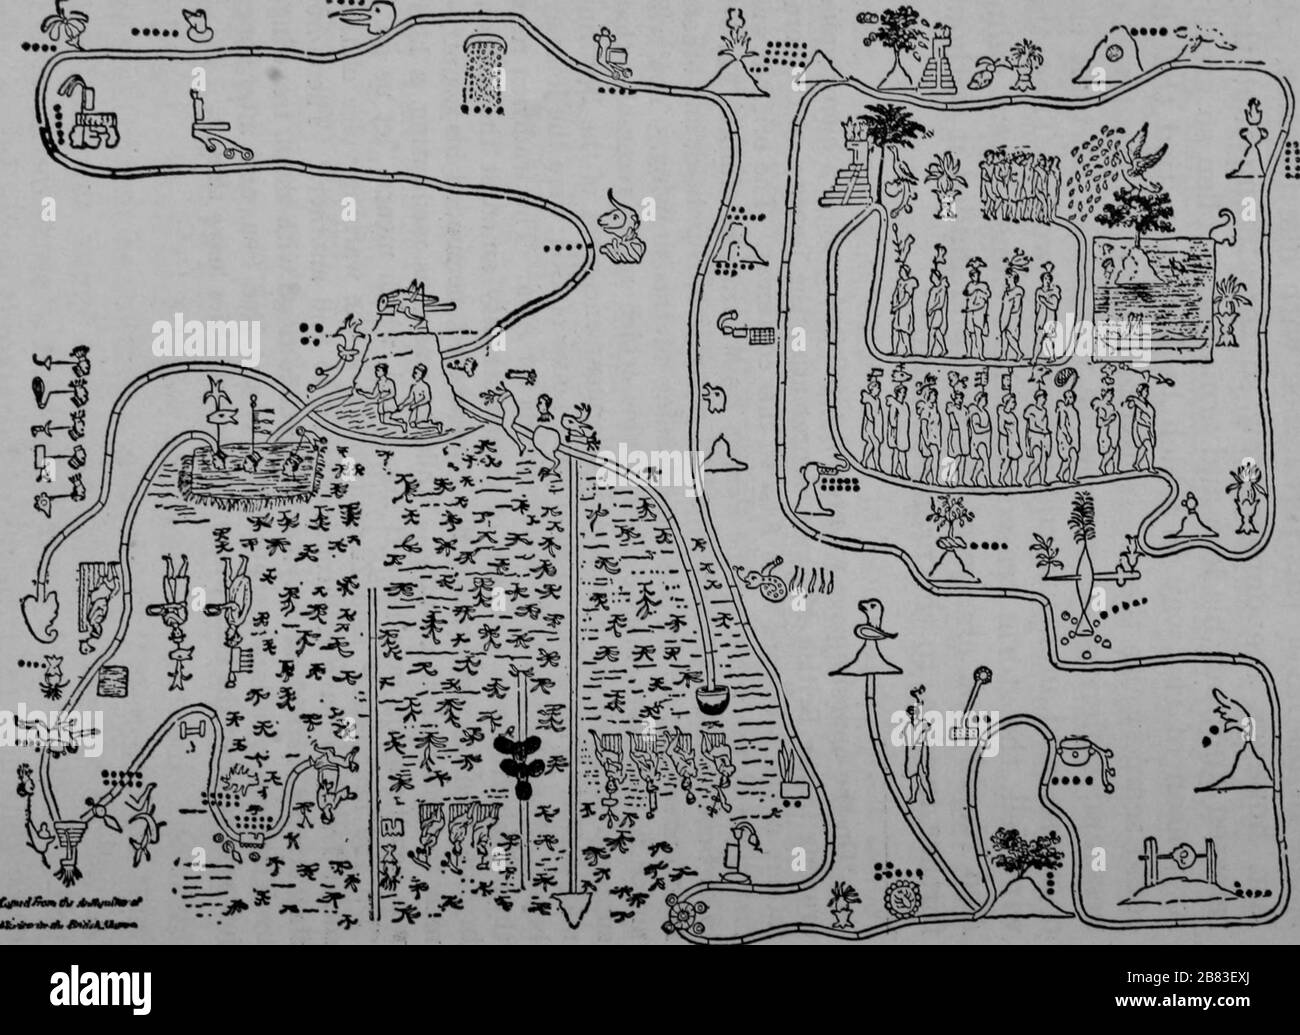 Karte mit den verschiedenen Orten im Buch Mormon, während Reisen durch das Land Nephi, heutiges Lateinamerika, im Jahre 1888. Kostenloses Internetarchiv. () Stockfoto